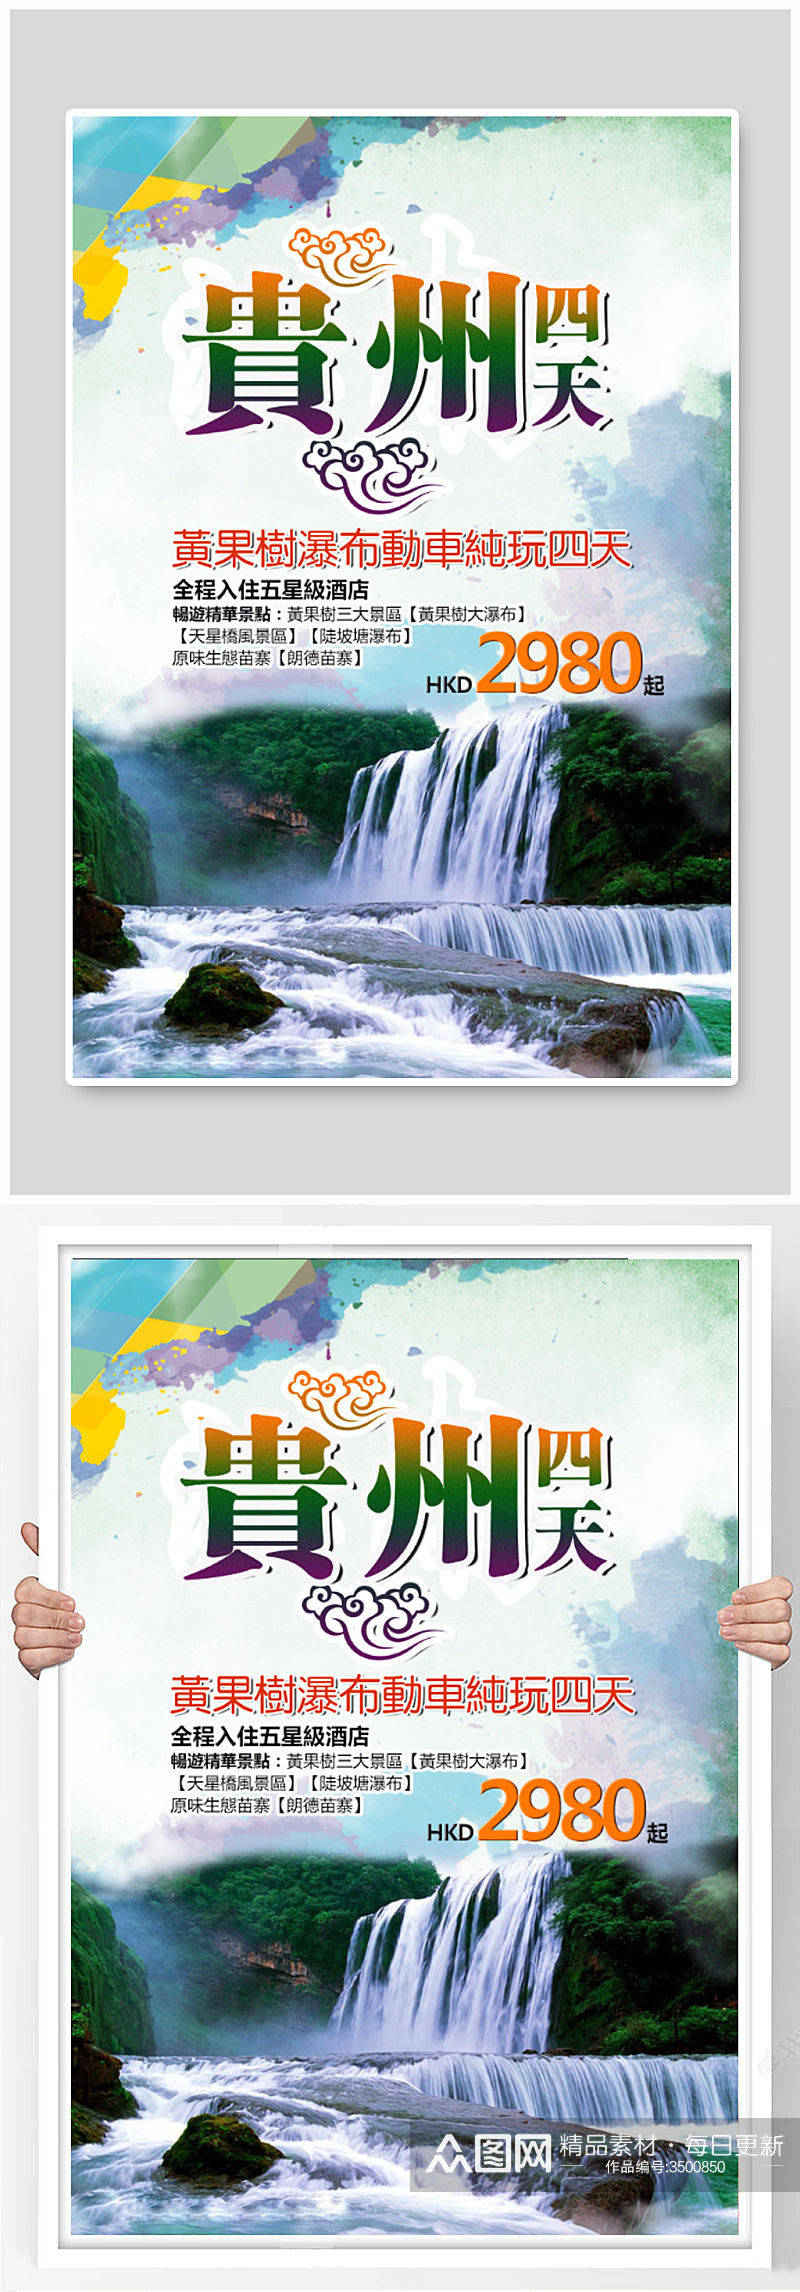 贵州之旅海报设计素材